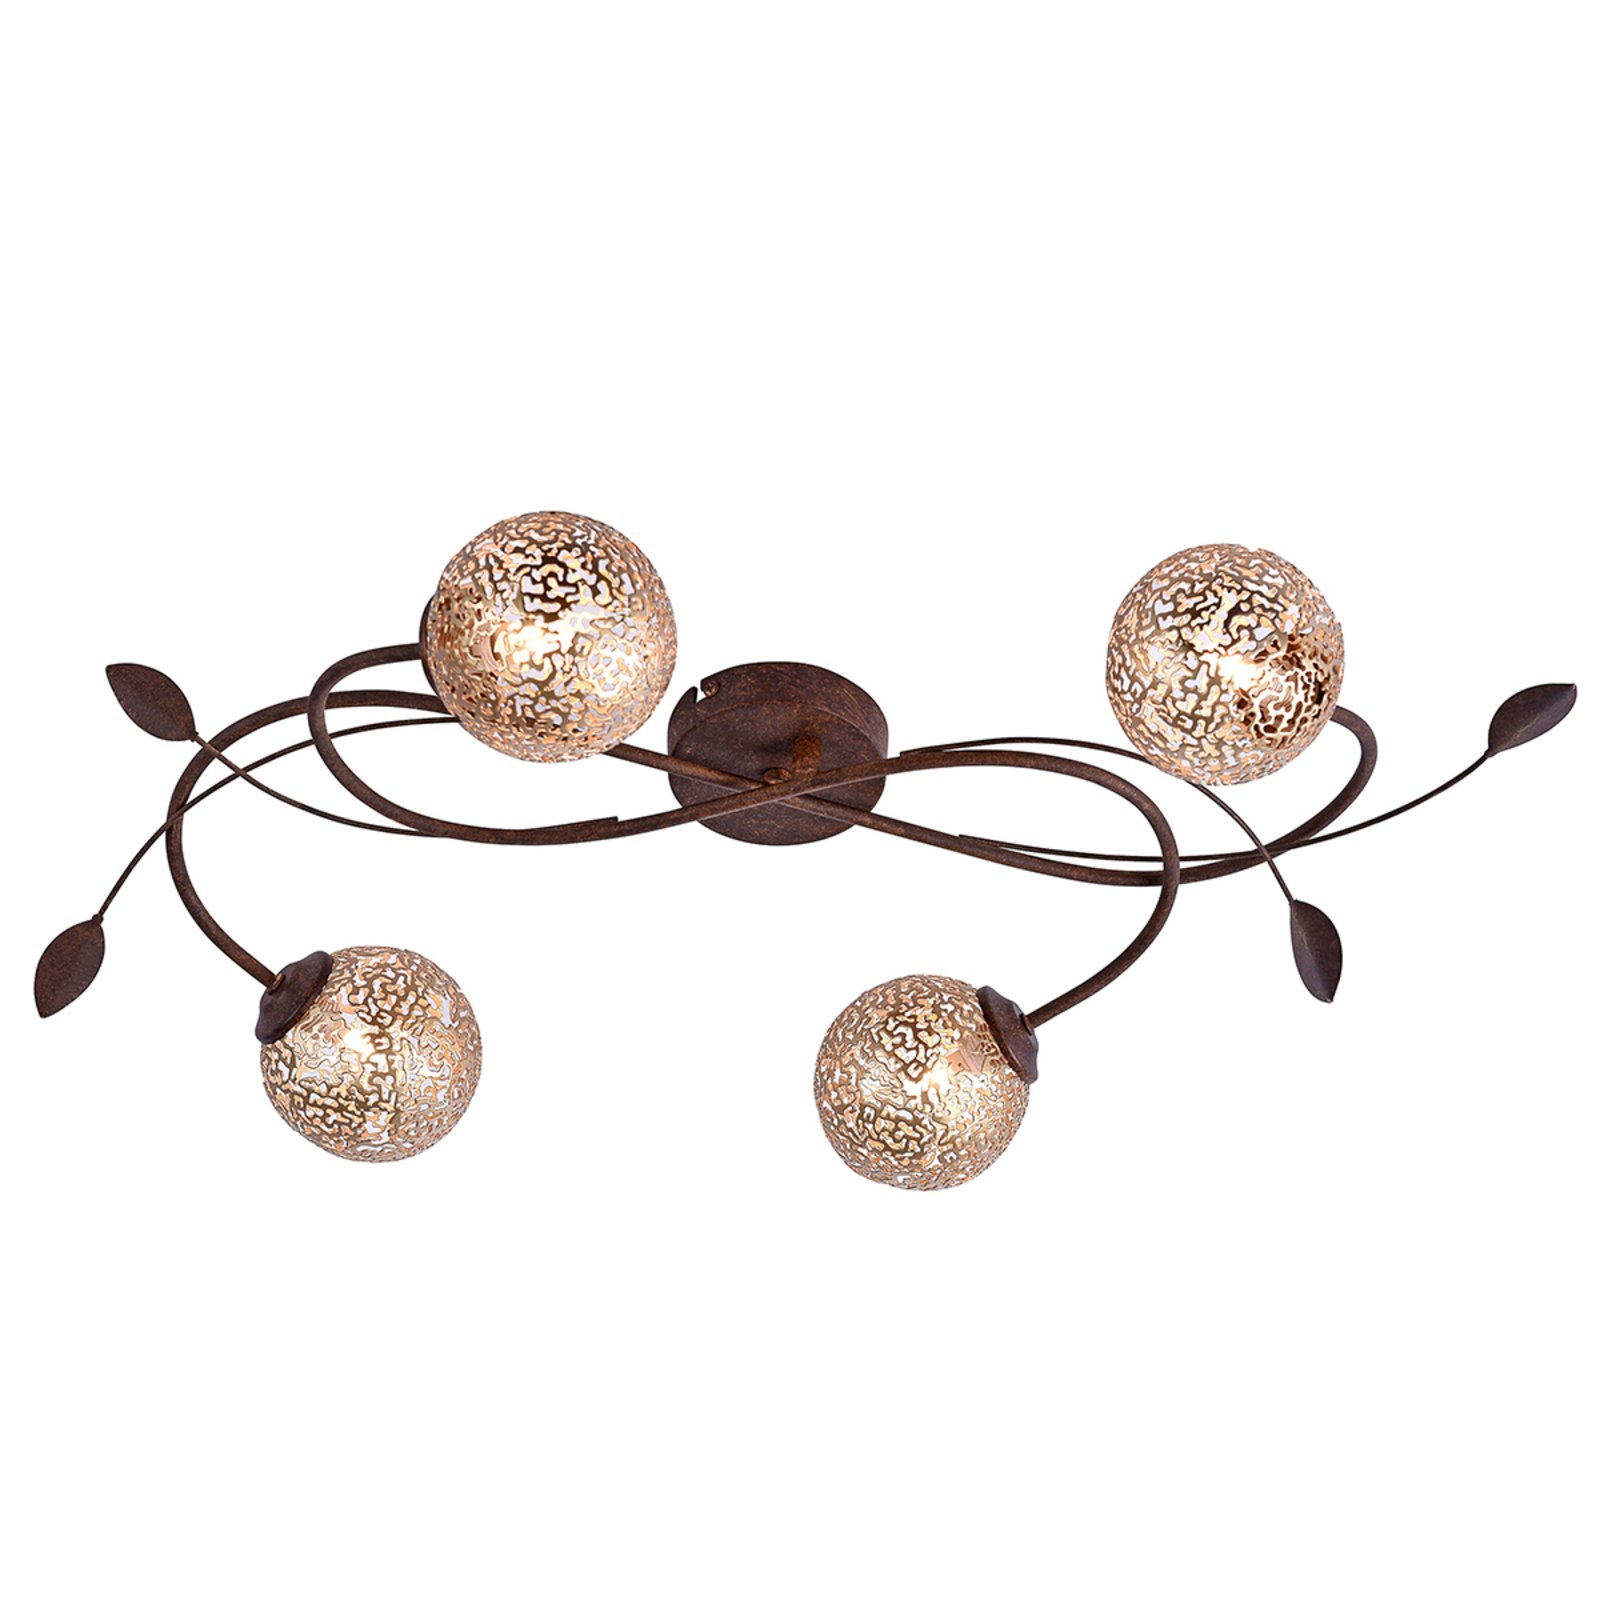 Greta stropna svjetiljka u cvjetnom dizajnu, 4 žarulje.